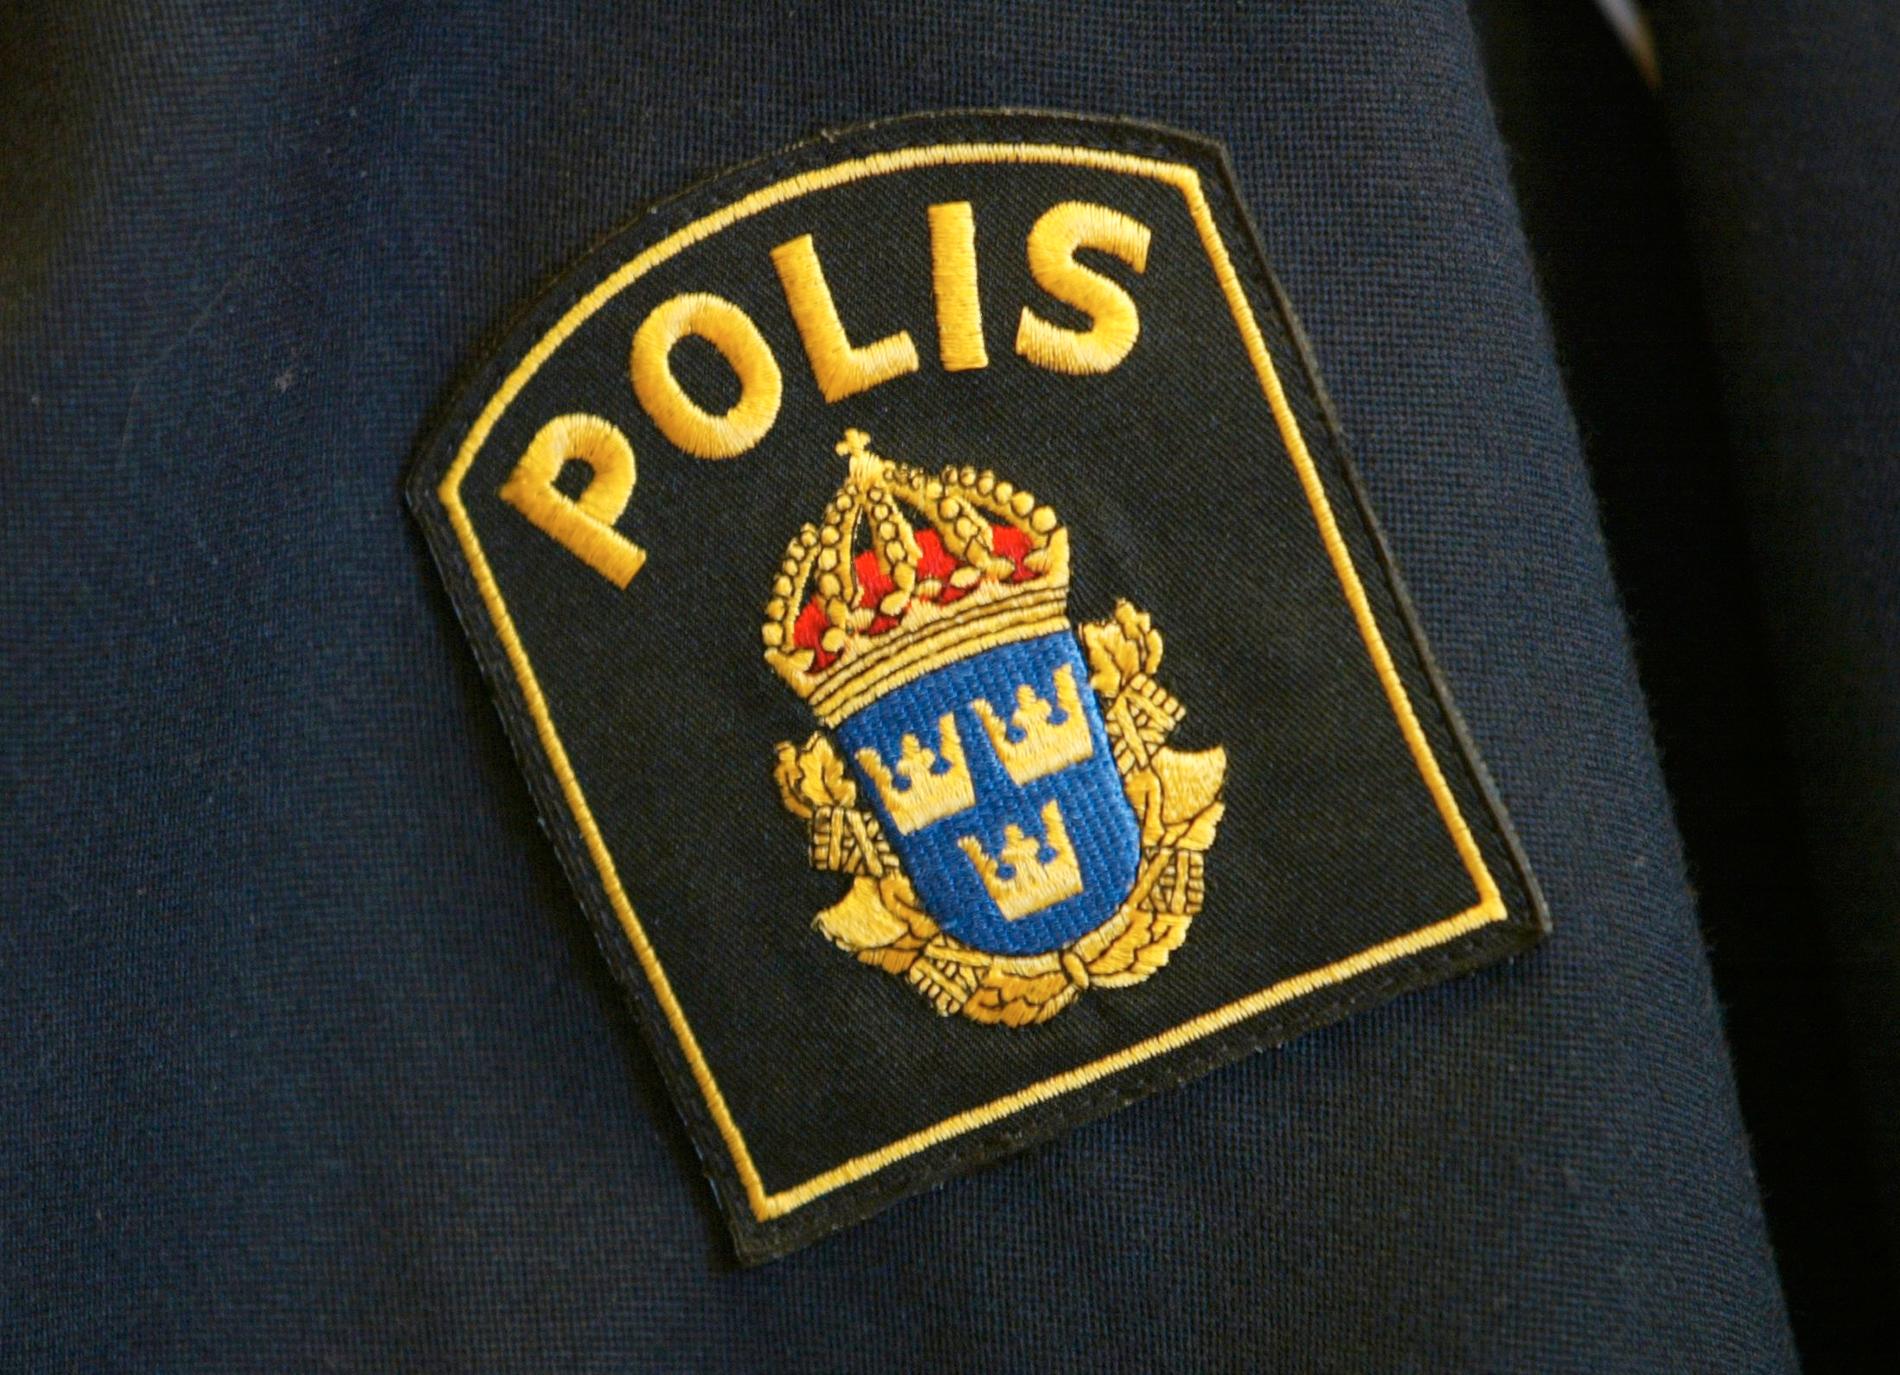 Det föremål som hittades utanför en mataffär i ett industriområde i Trollhättan var en skarp sprängladdning konstaterar polisens bombgrupp. Arkivbild.